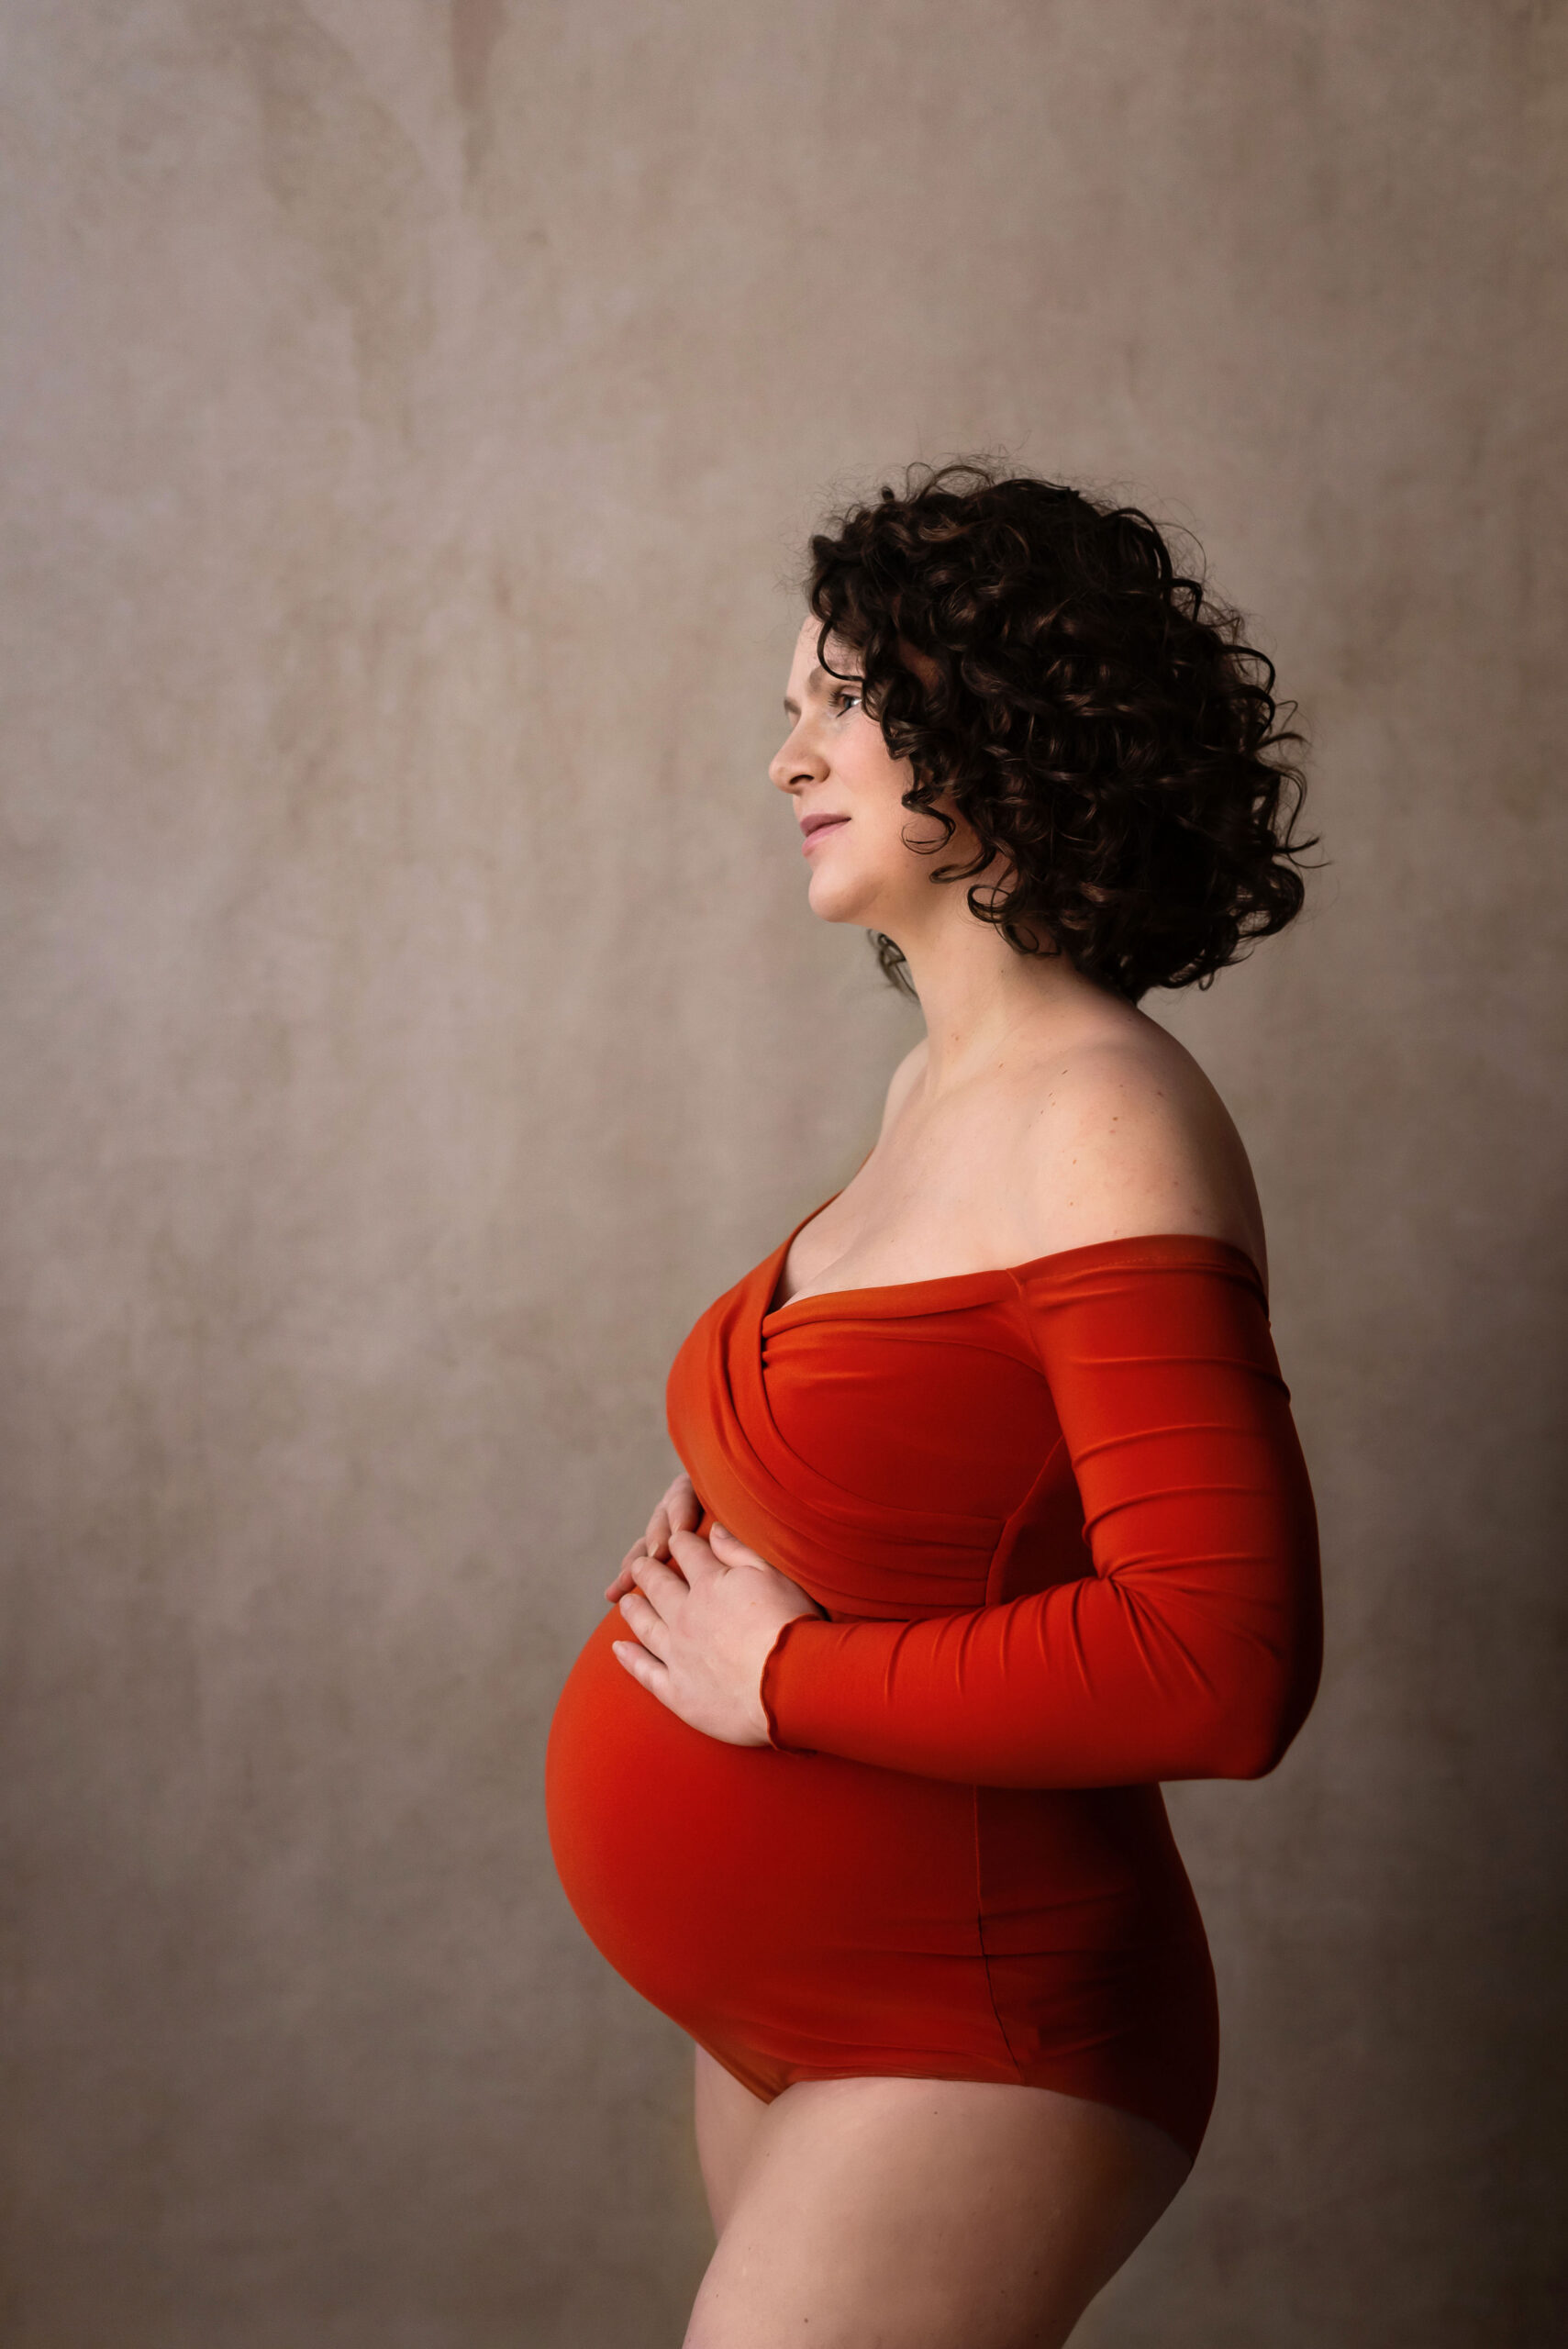 Zwanger fotoshoot Elst 33 weken